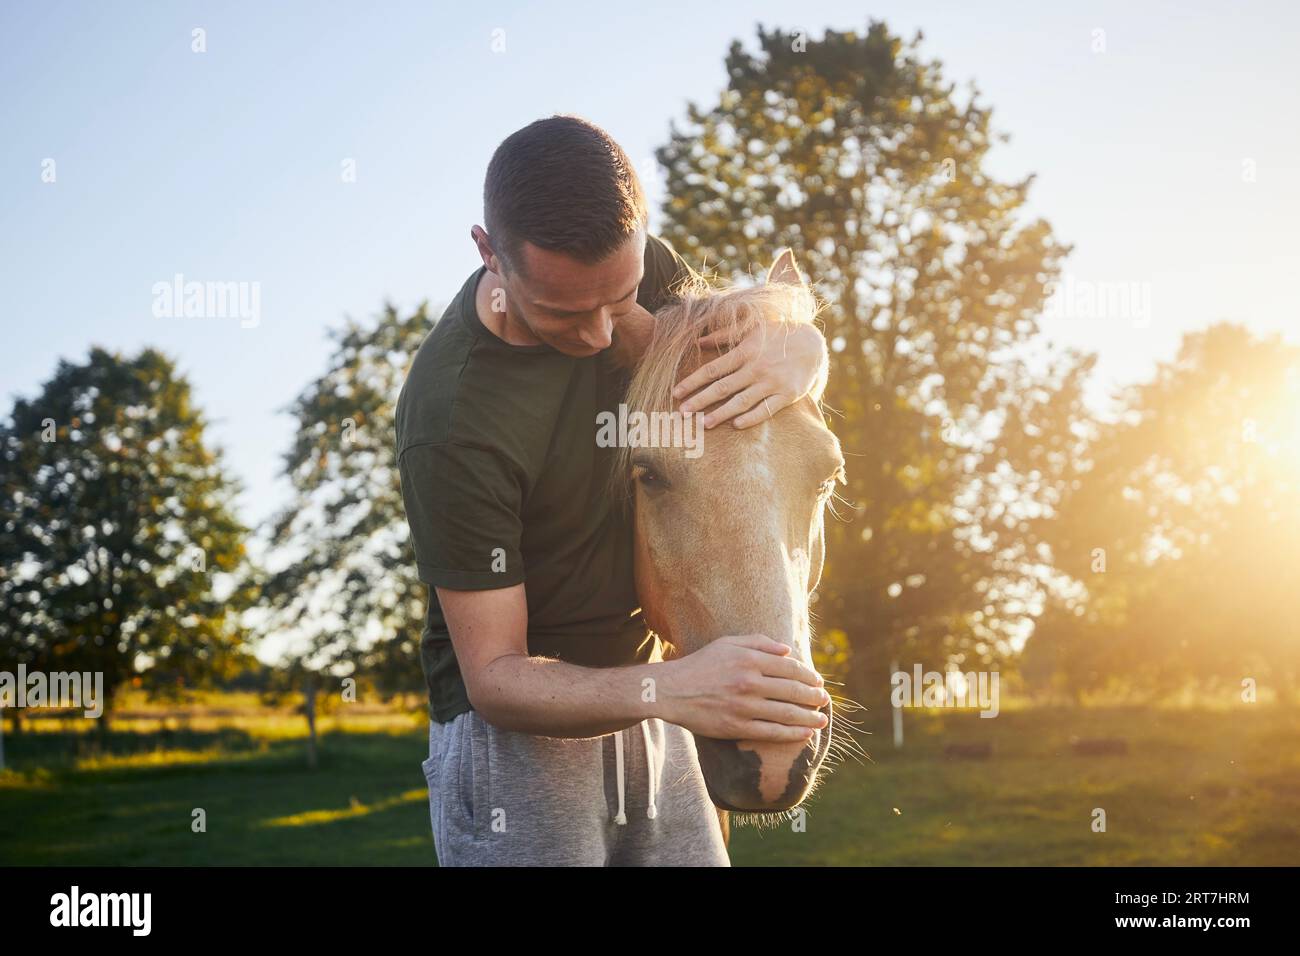 L'uomo abbraccia il cavallo terapeutico sul prato al tramonto. Temi ippoterapia, cura e amicizia tra persone e animali. Foto Stock